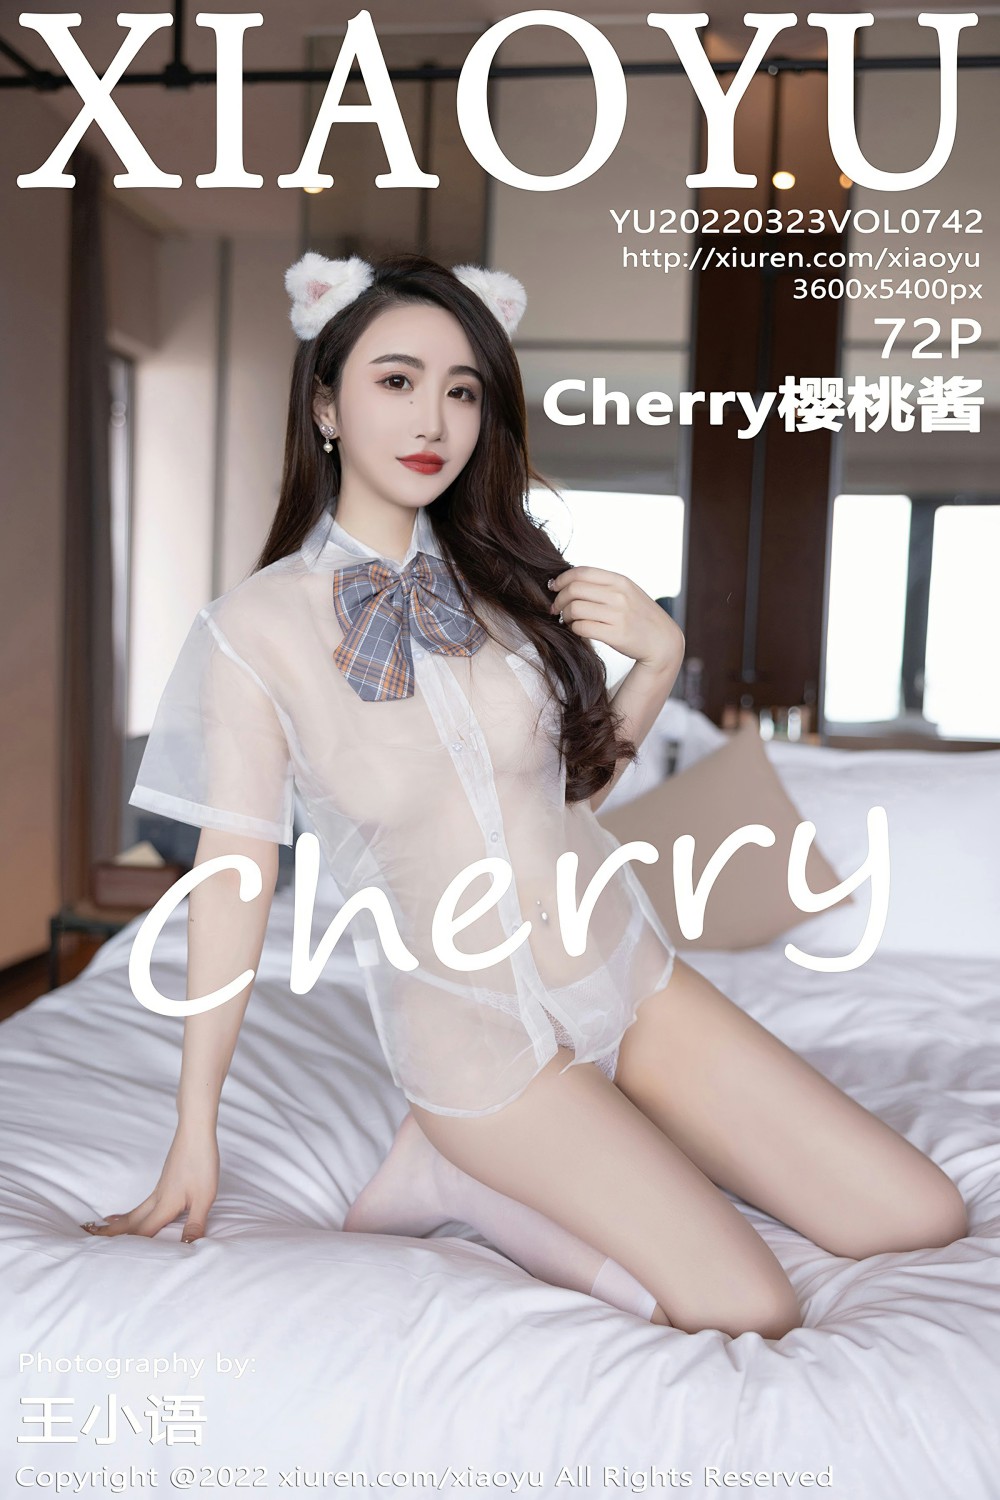 [XIAOYU语画界] 2022.03.23 VOL.742 Cherry樱桃酱 白色丝袜 [72+1P]-第1张图片-宅男套图吧